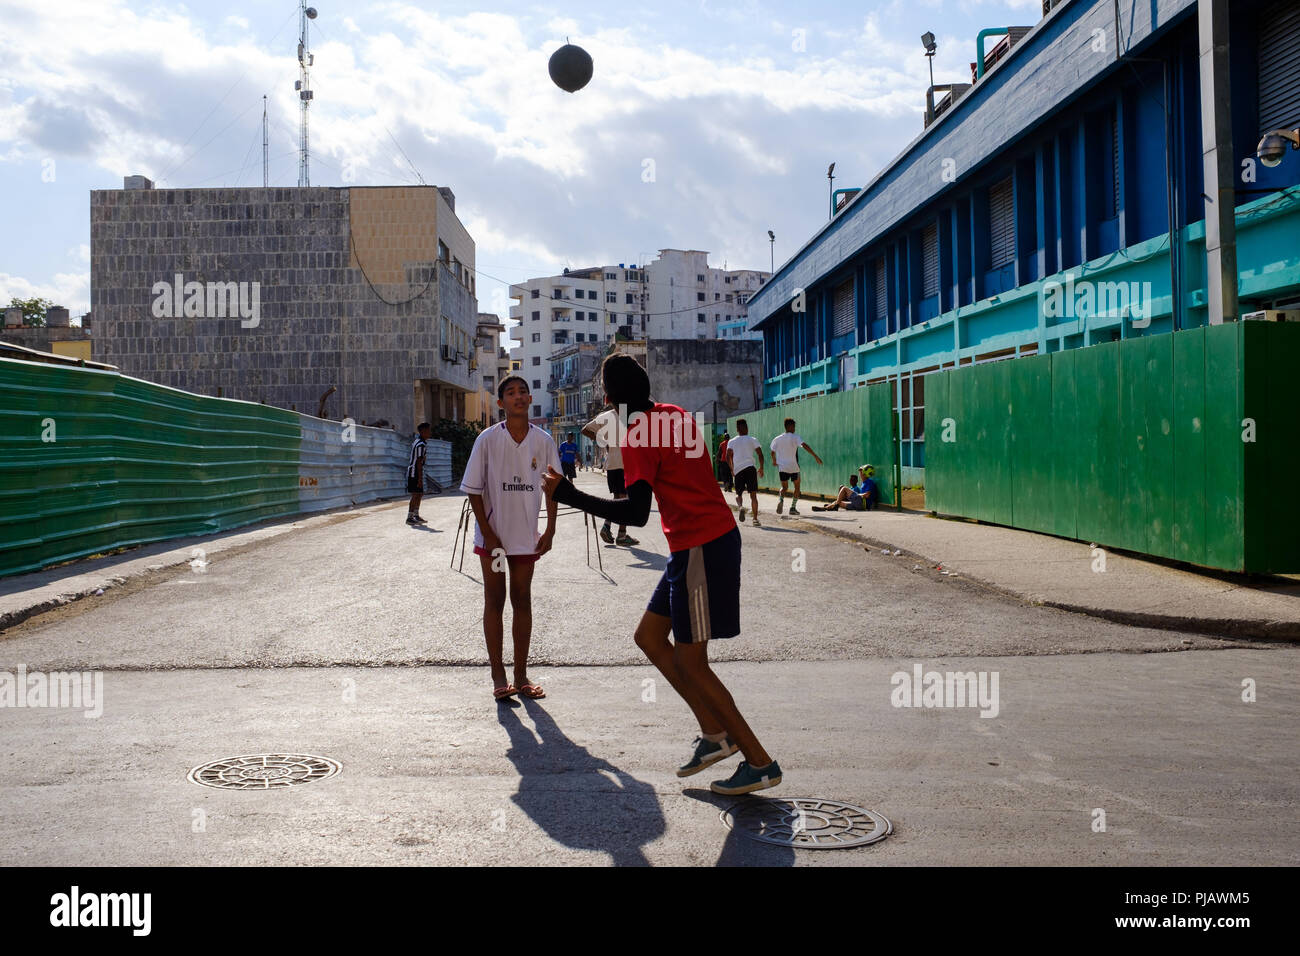 L'Avana, Cuba - CIRCA NEL MARZO 2017: i ragazzi che giocano a calcio per le strade di l'Avana. Questo è tipico in giro per la città. Foto Stock